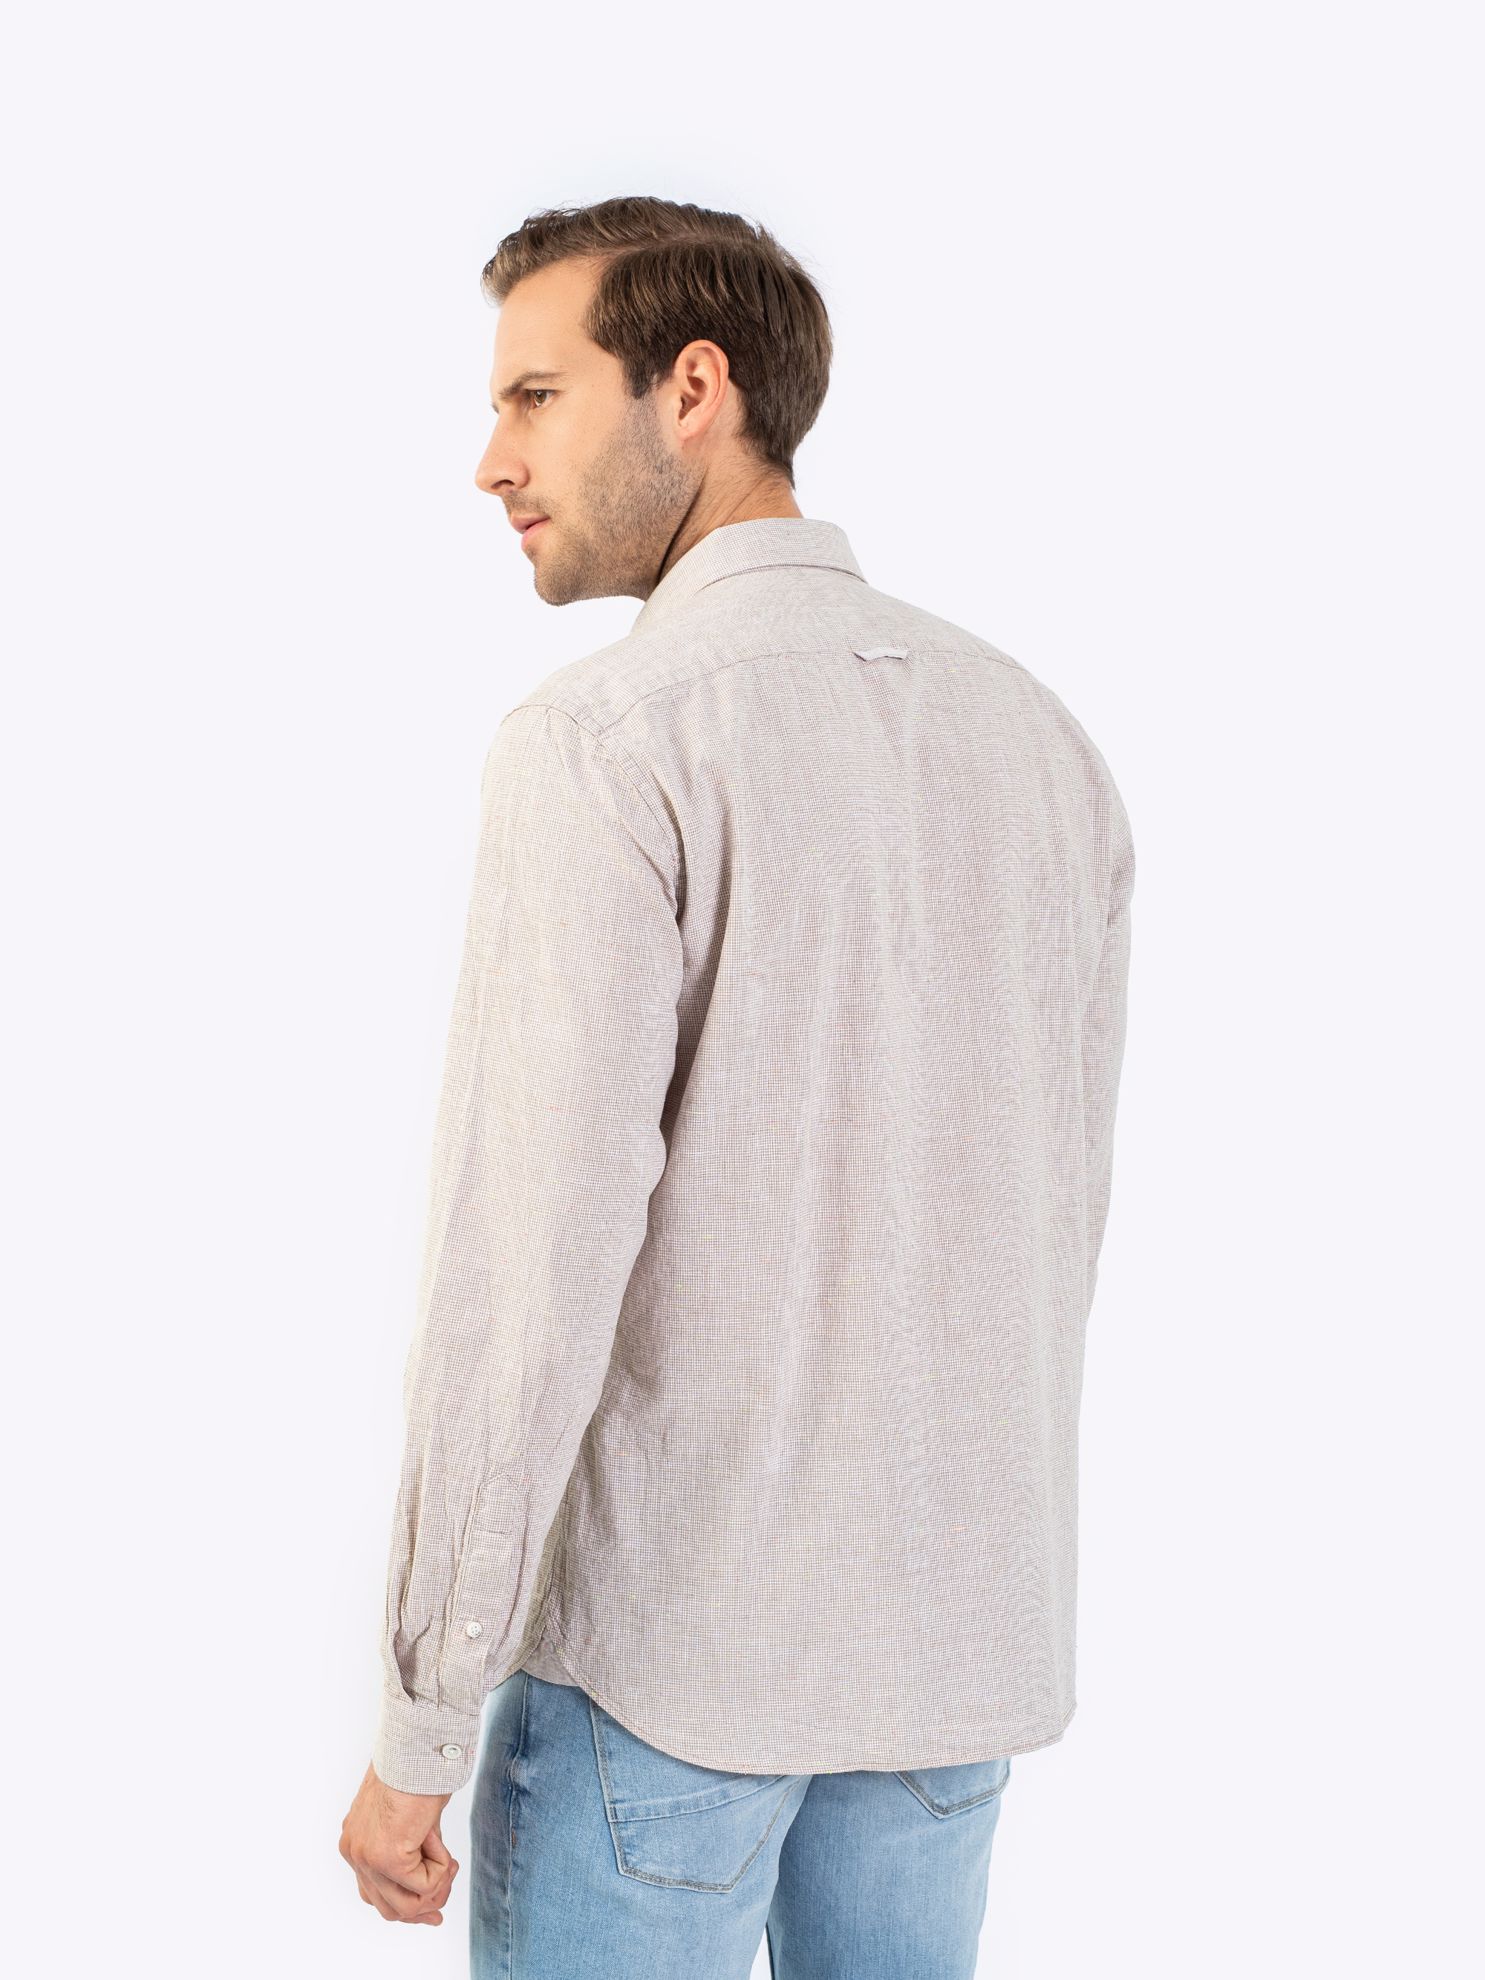 Karaca Erkek Slim Fit Gömlek-Bej. ürün görseli